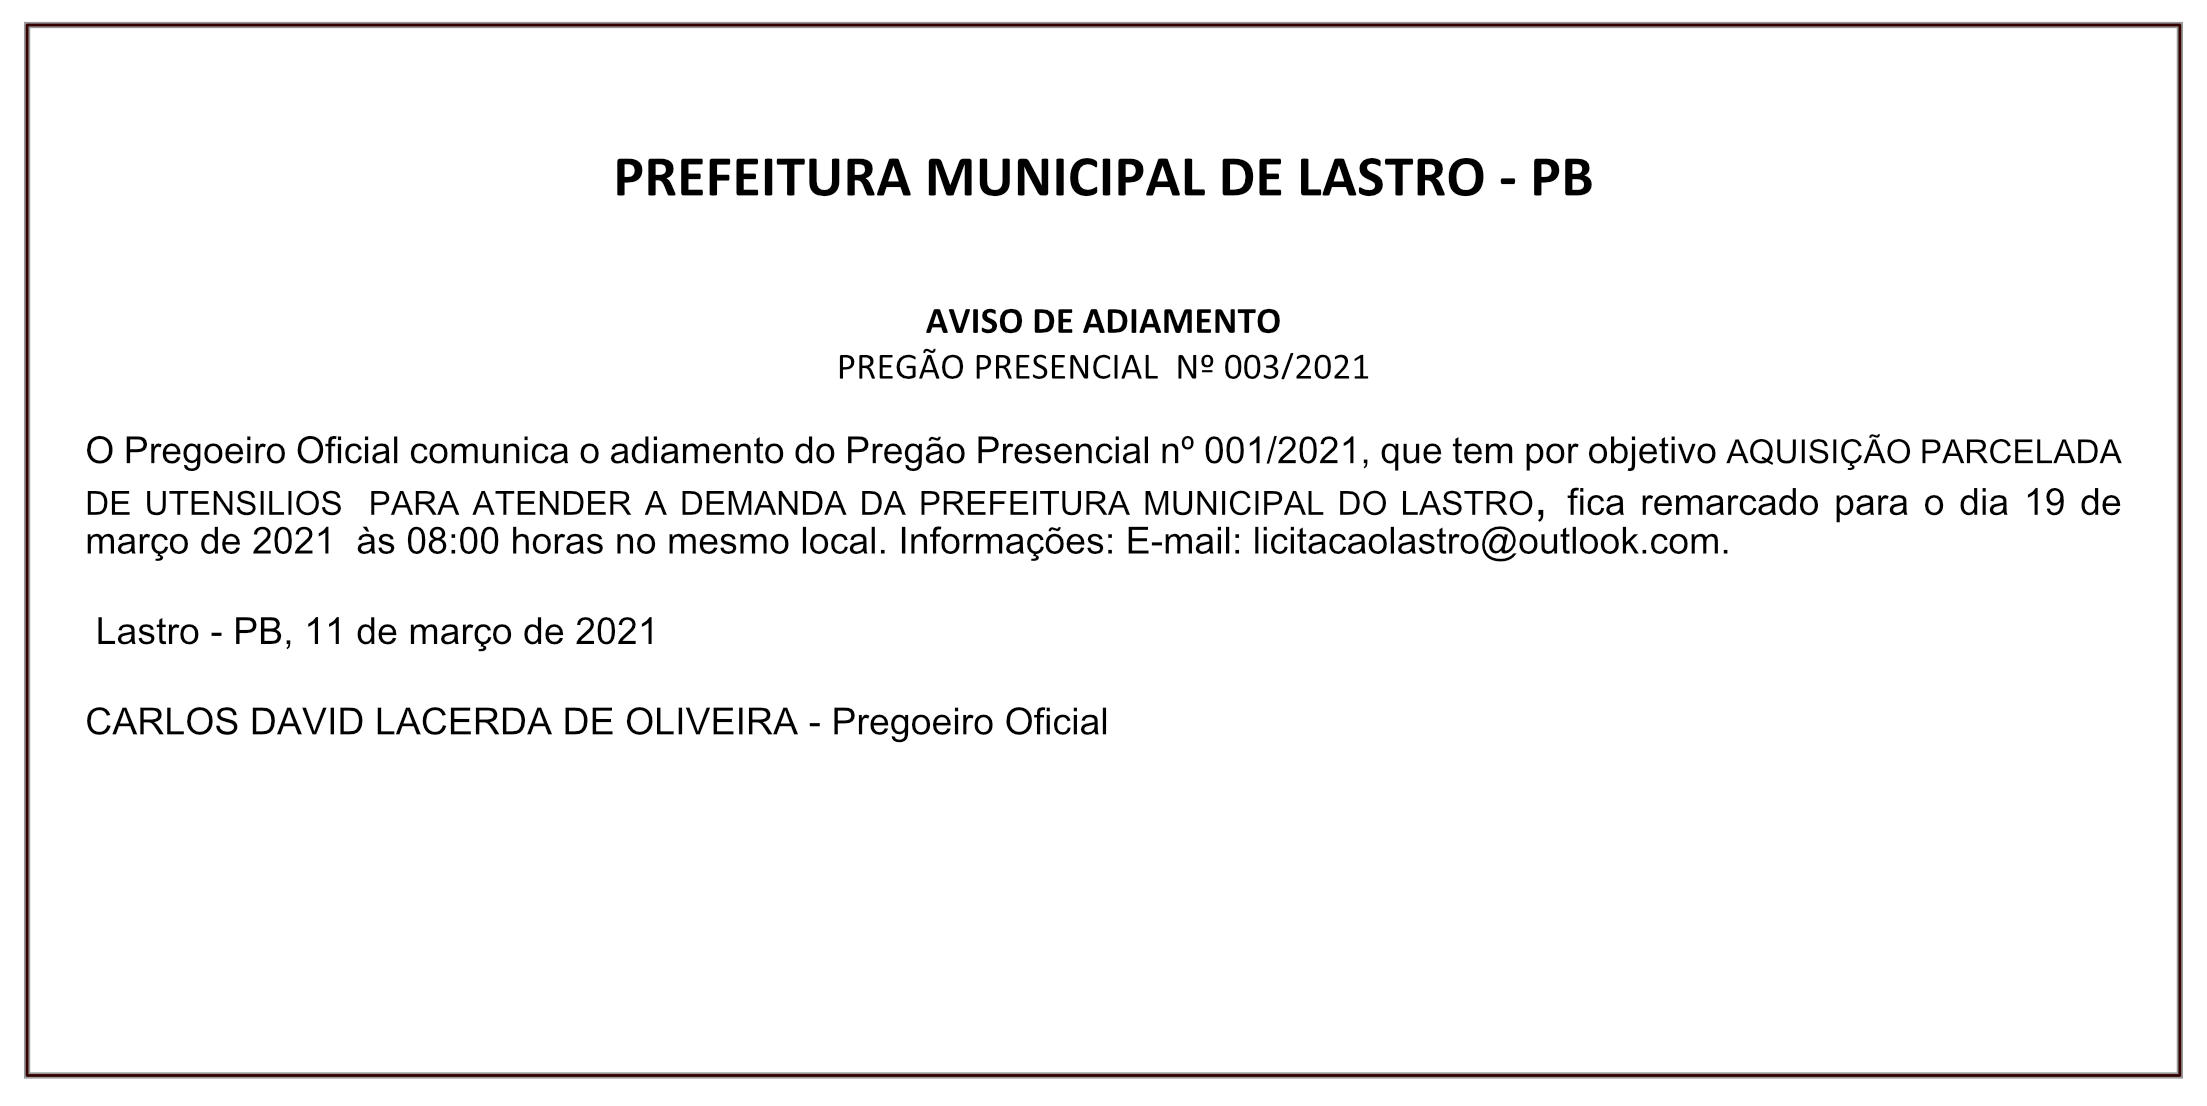 PREFEITURA MUNICIPAL DO LASTRO – AVISO DE ADIAMENTO – PREGÃO PRESENCIAL Nº 003/2021